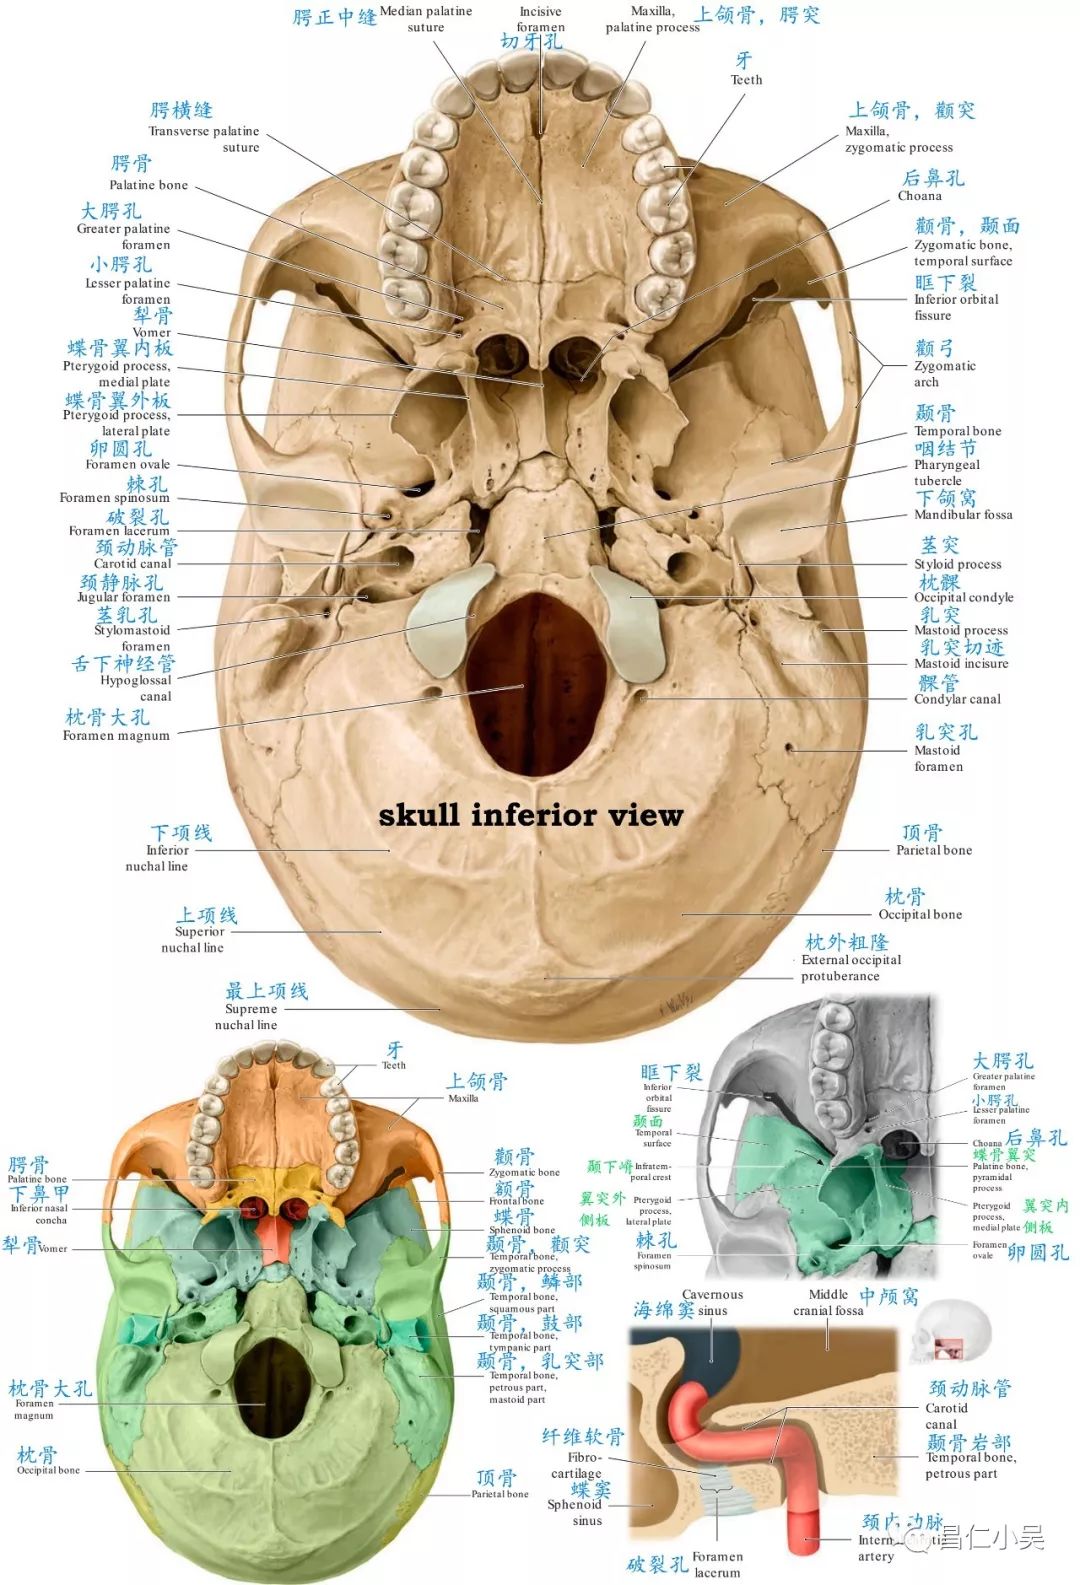 神经解剖学习笔记:脑颅骨